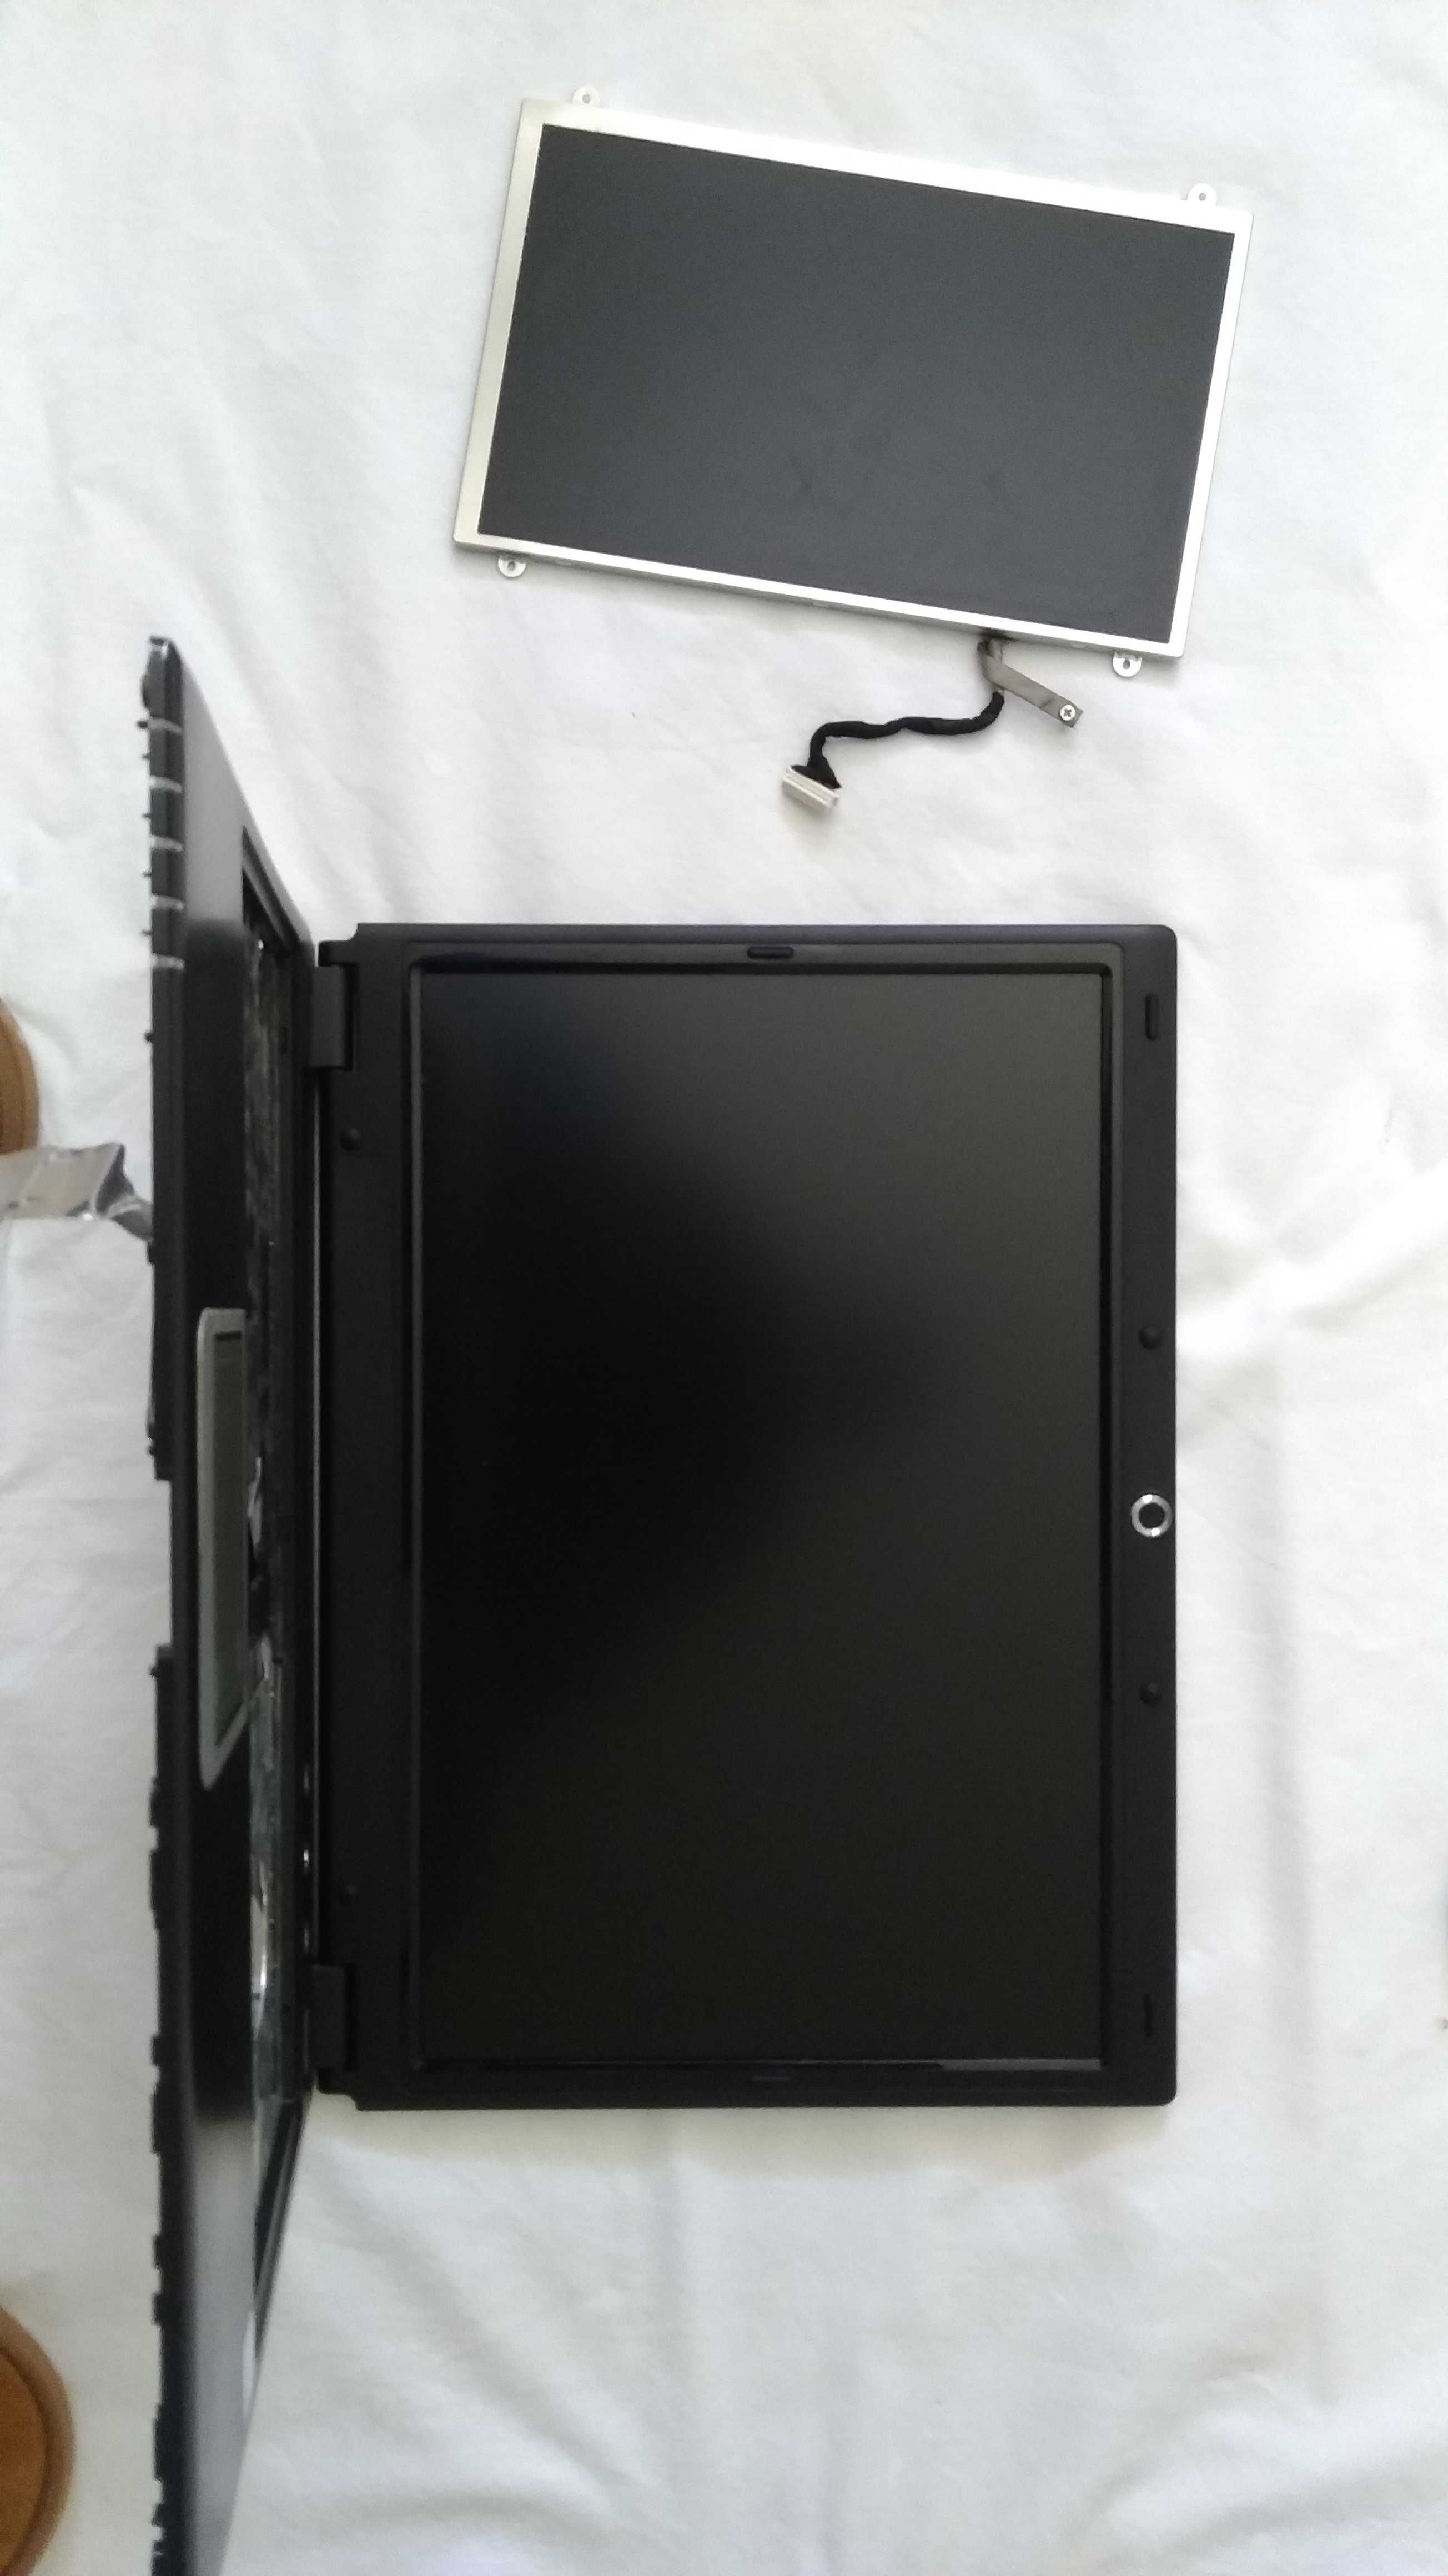 caixa PC antigo com tecnologia antiga para reutilizar / reciclar